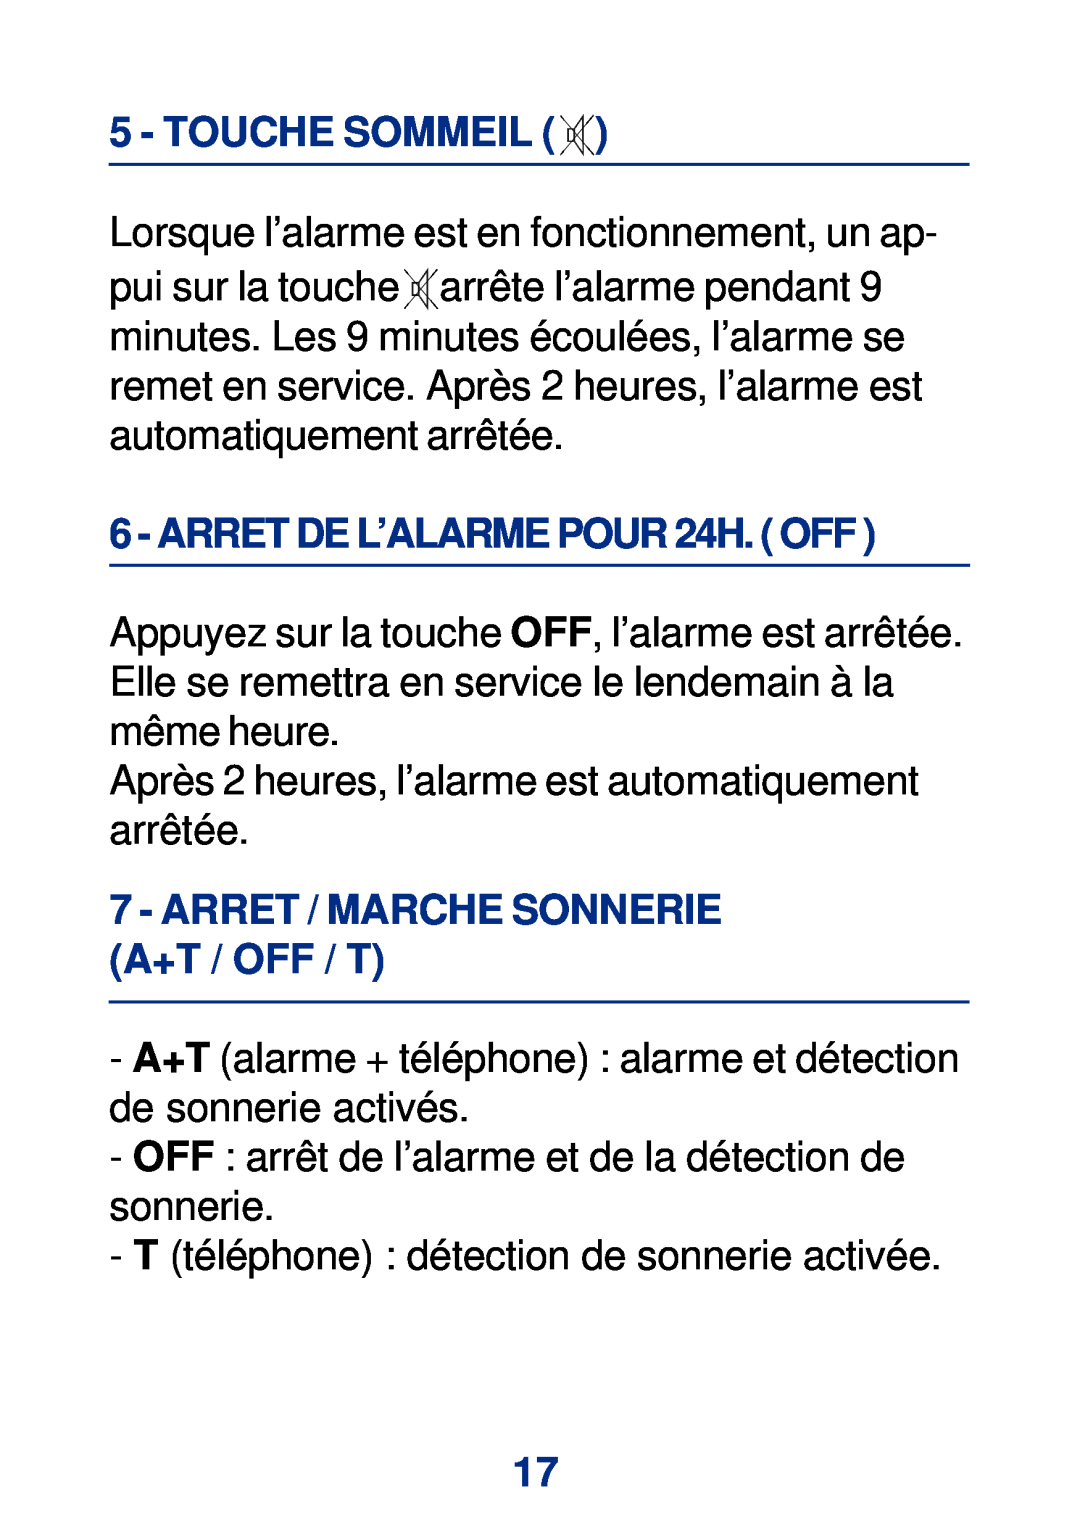 Geemarc Large Display Alarm Clock Touche Sommeil, ARRET DE L’ALARME POUR 24H. OFF, Arret / Marche Sonnerie A+T / Off / T 